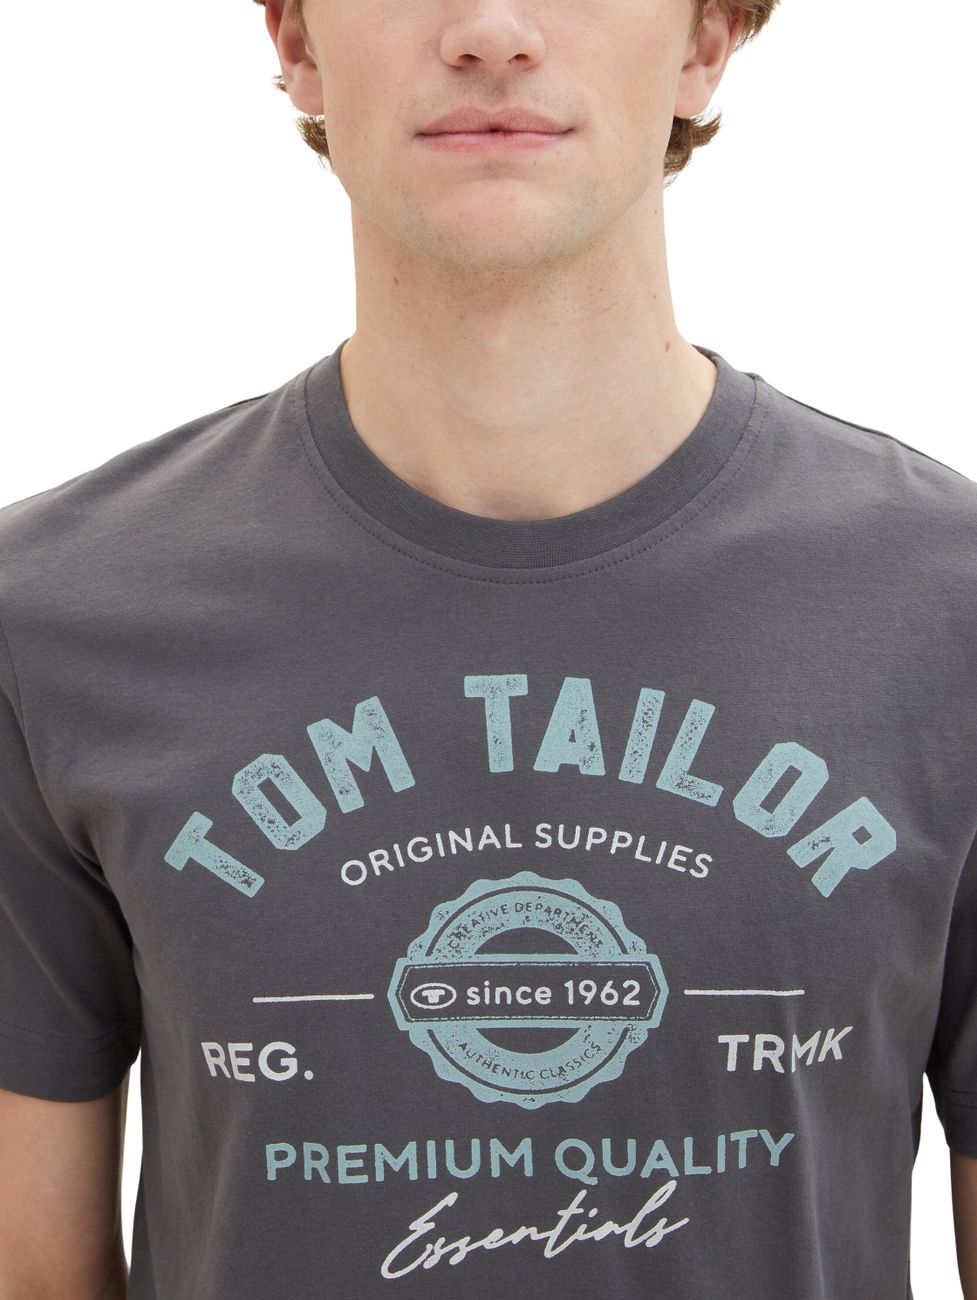 Tom Tailor Herren T-Shirt